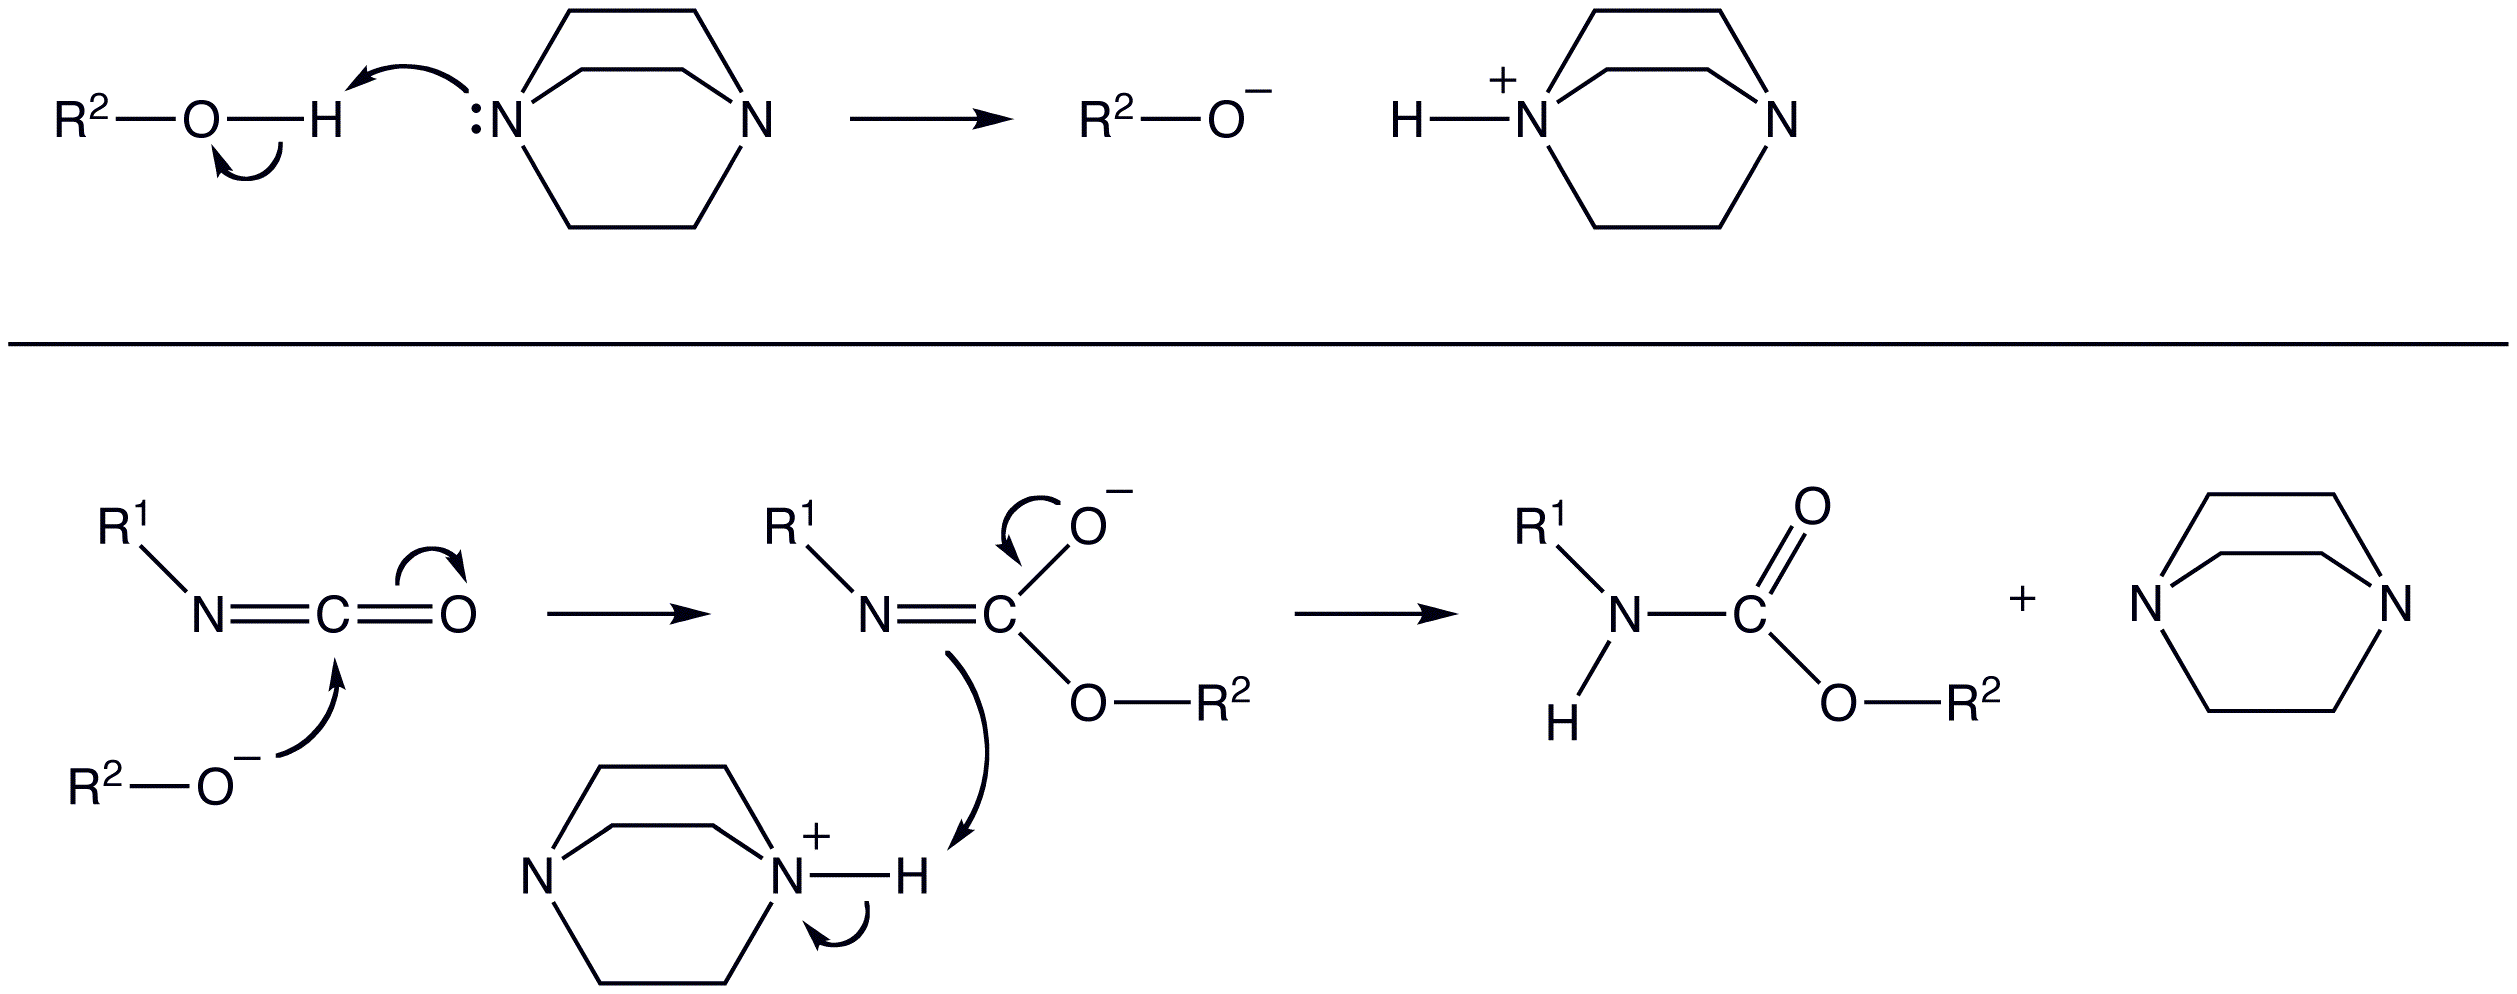 Полиуретан формула. Реакция изоцианата и полиола. Механизм реакции полиолов и изоцианатов. Механизм реакции полиамидирования. Получение полиуретана